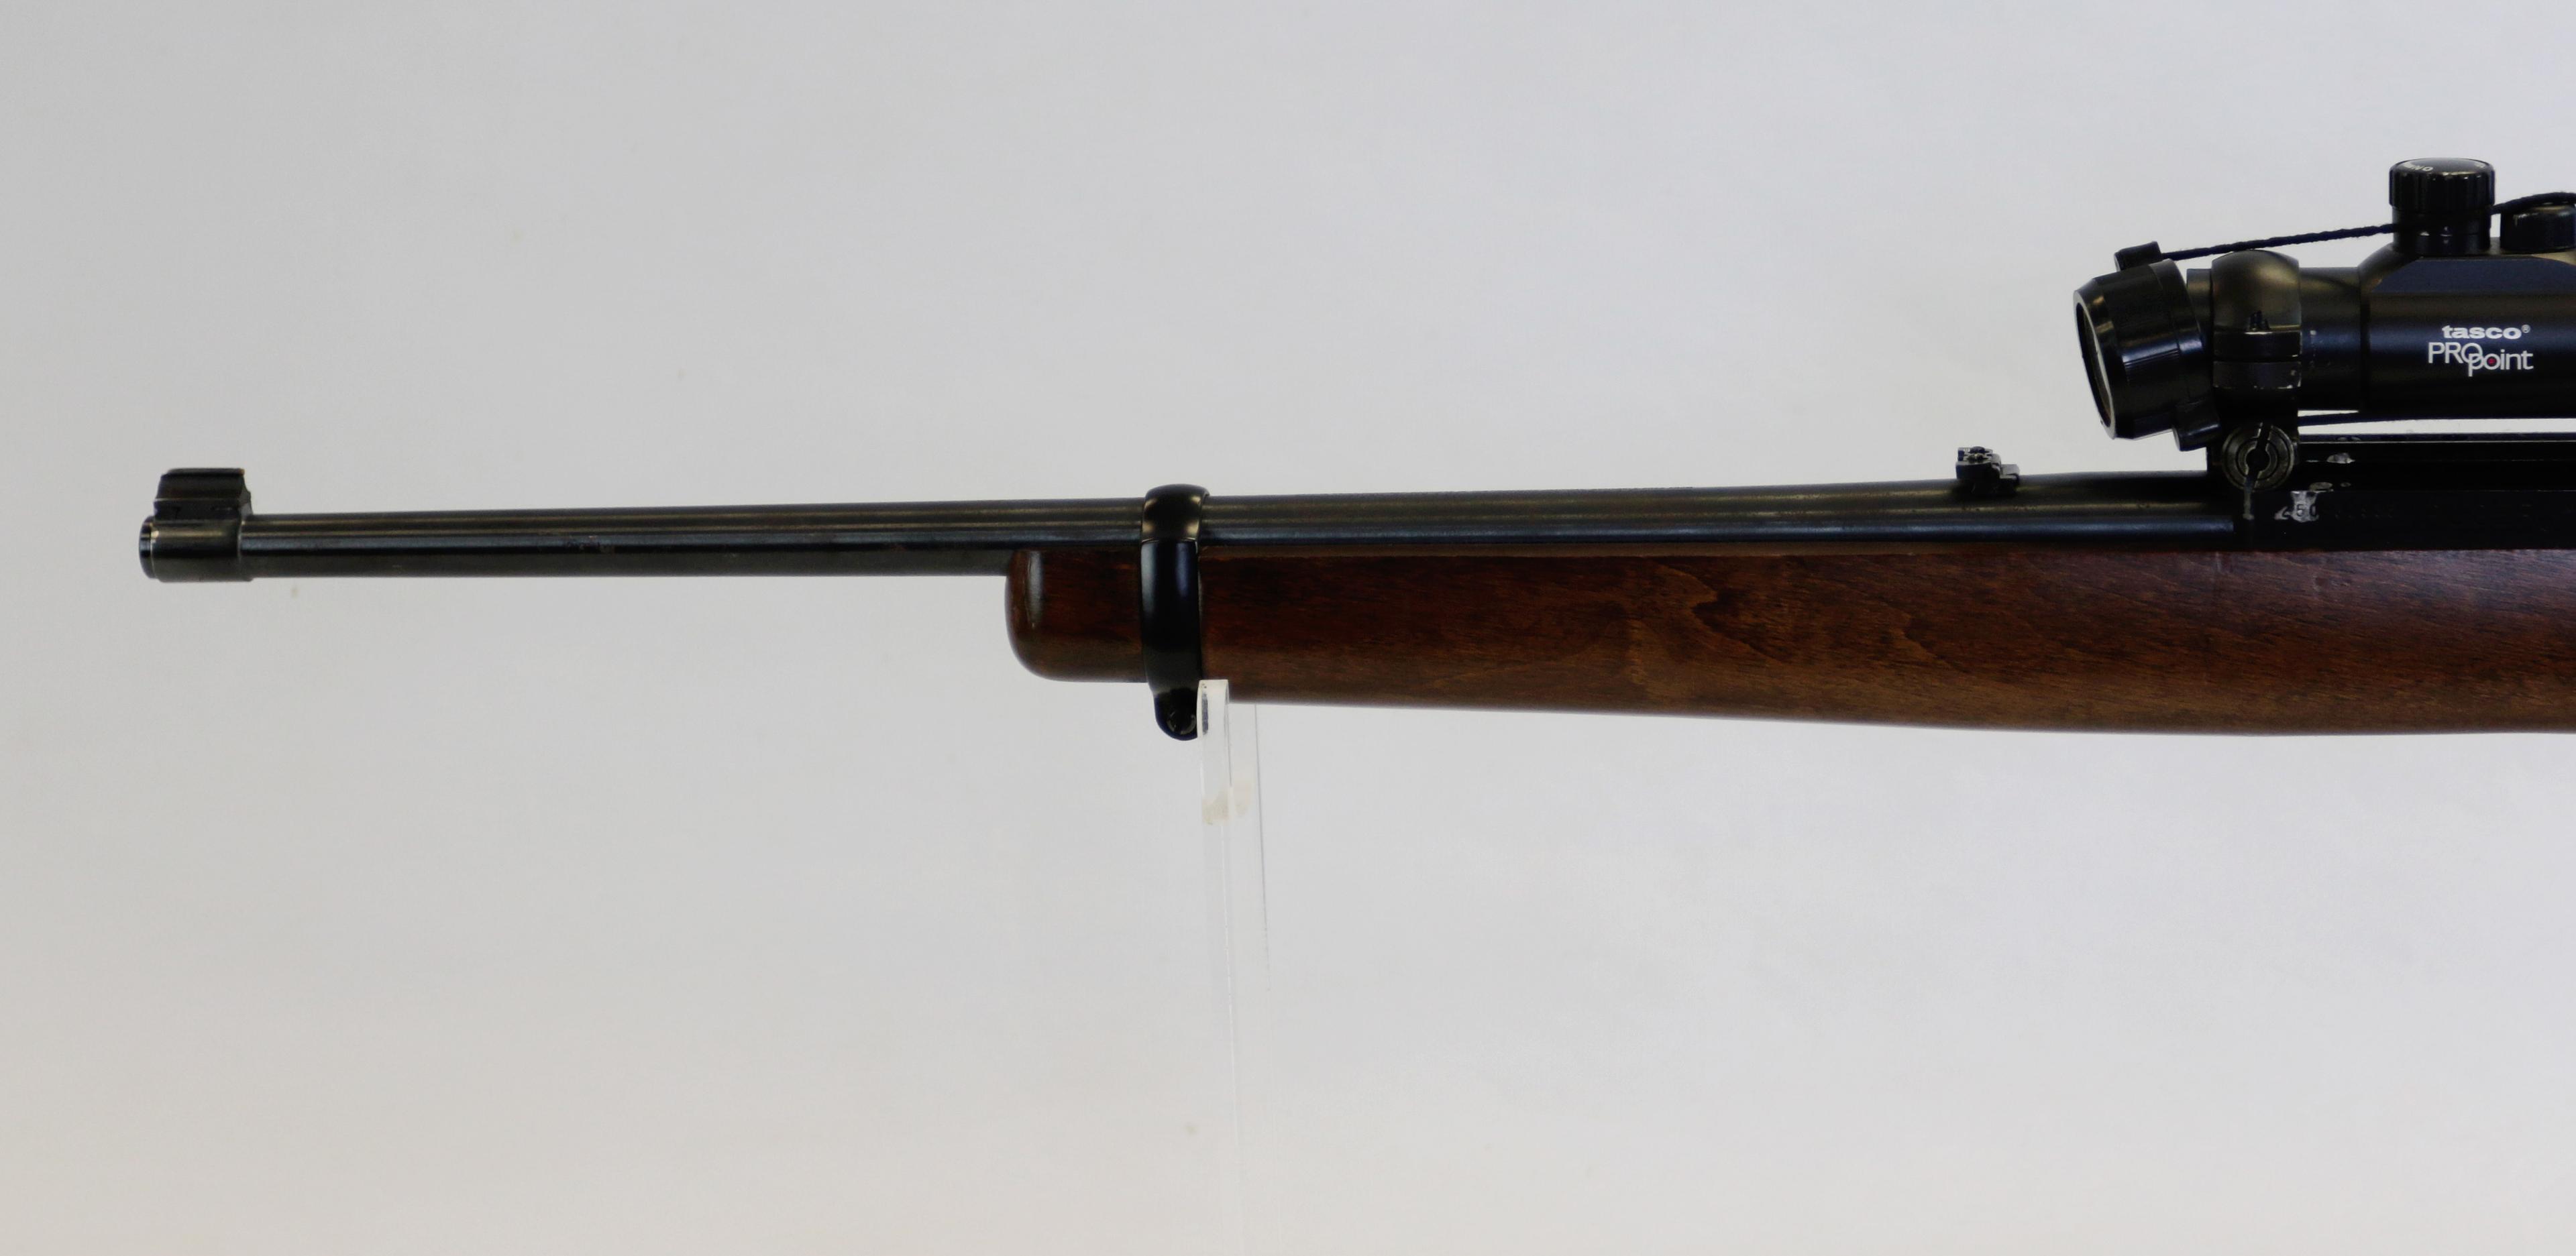 Ruger mod 10/22 Carbine 22 LR cal semi auto rifle